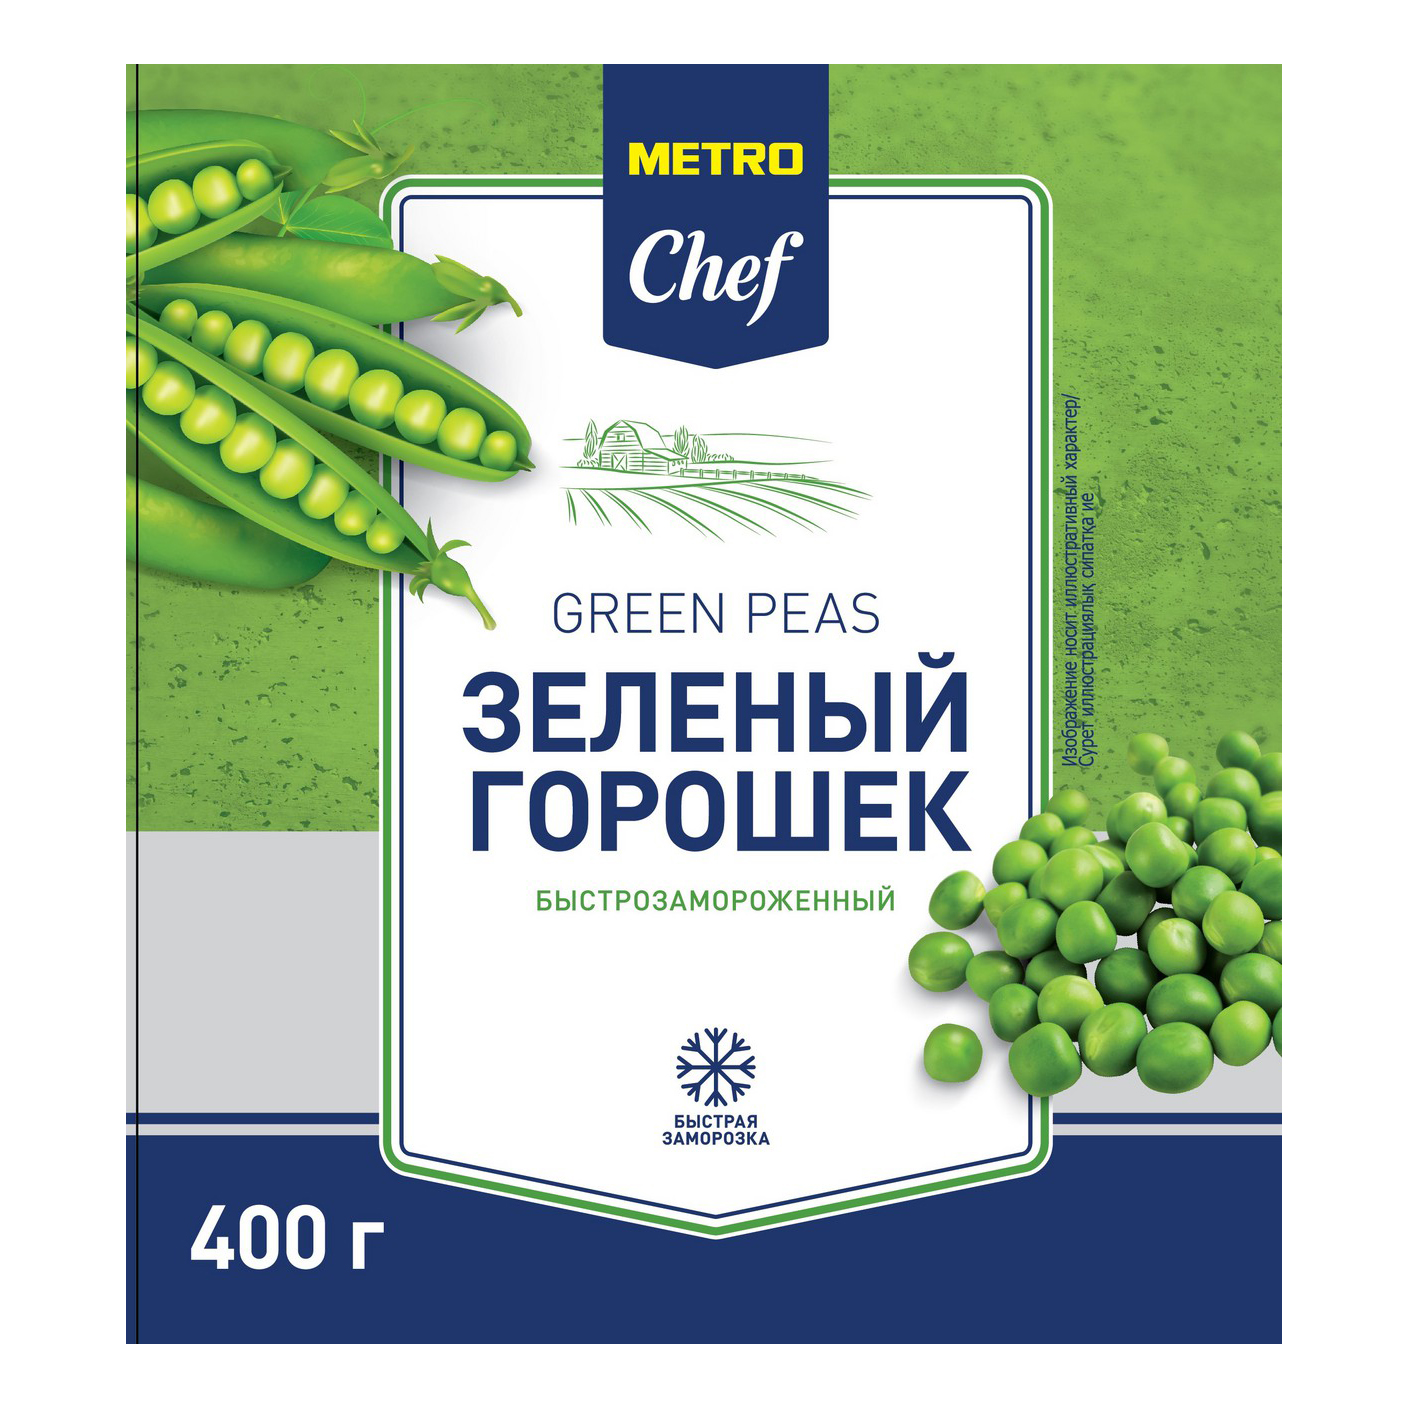 Горошек зеленый Metro Chef быстрозамороженный 400 г